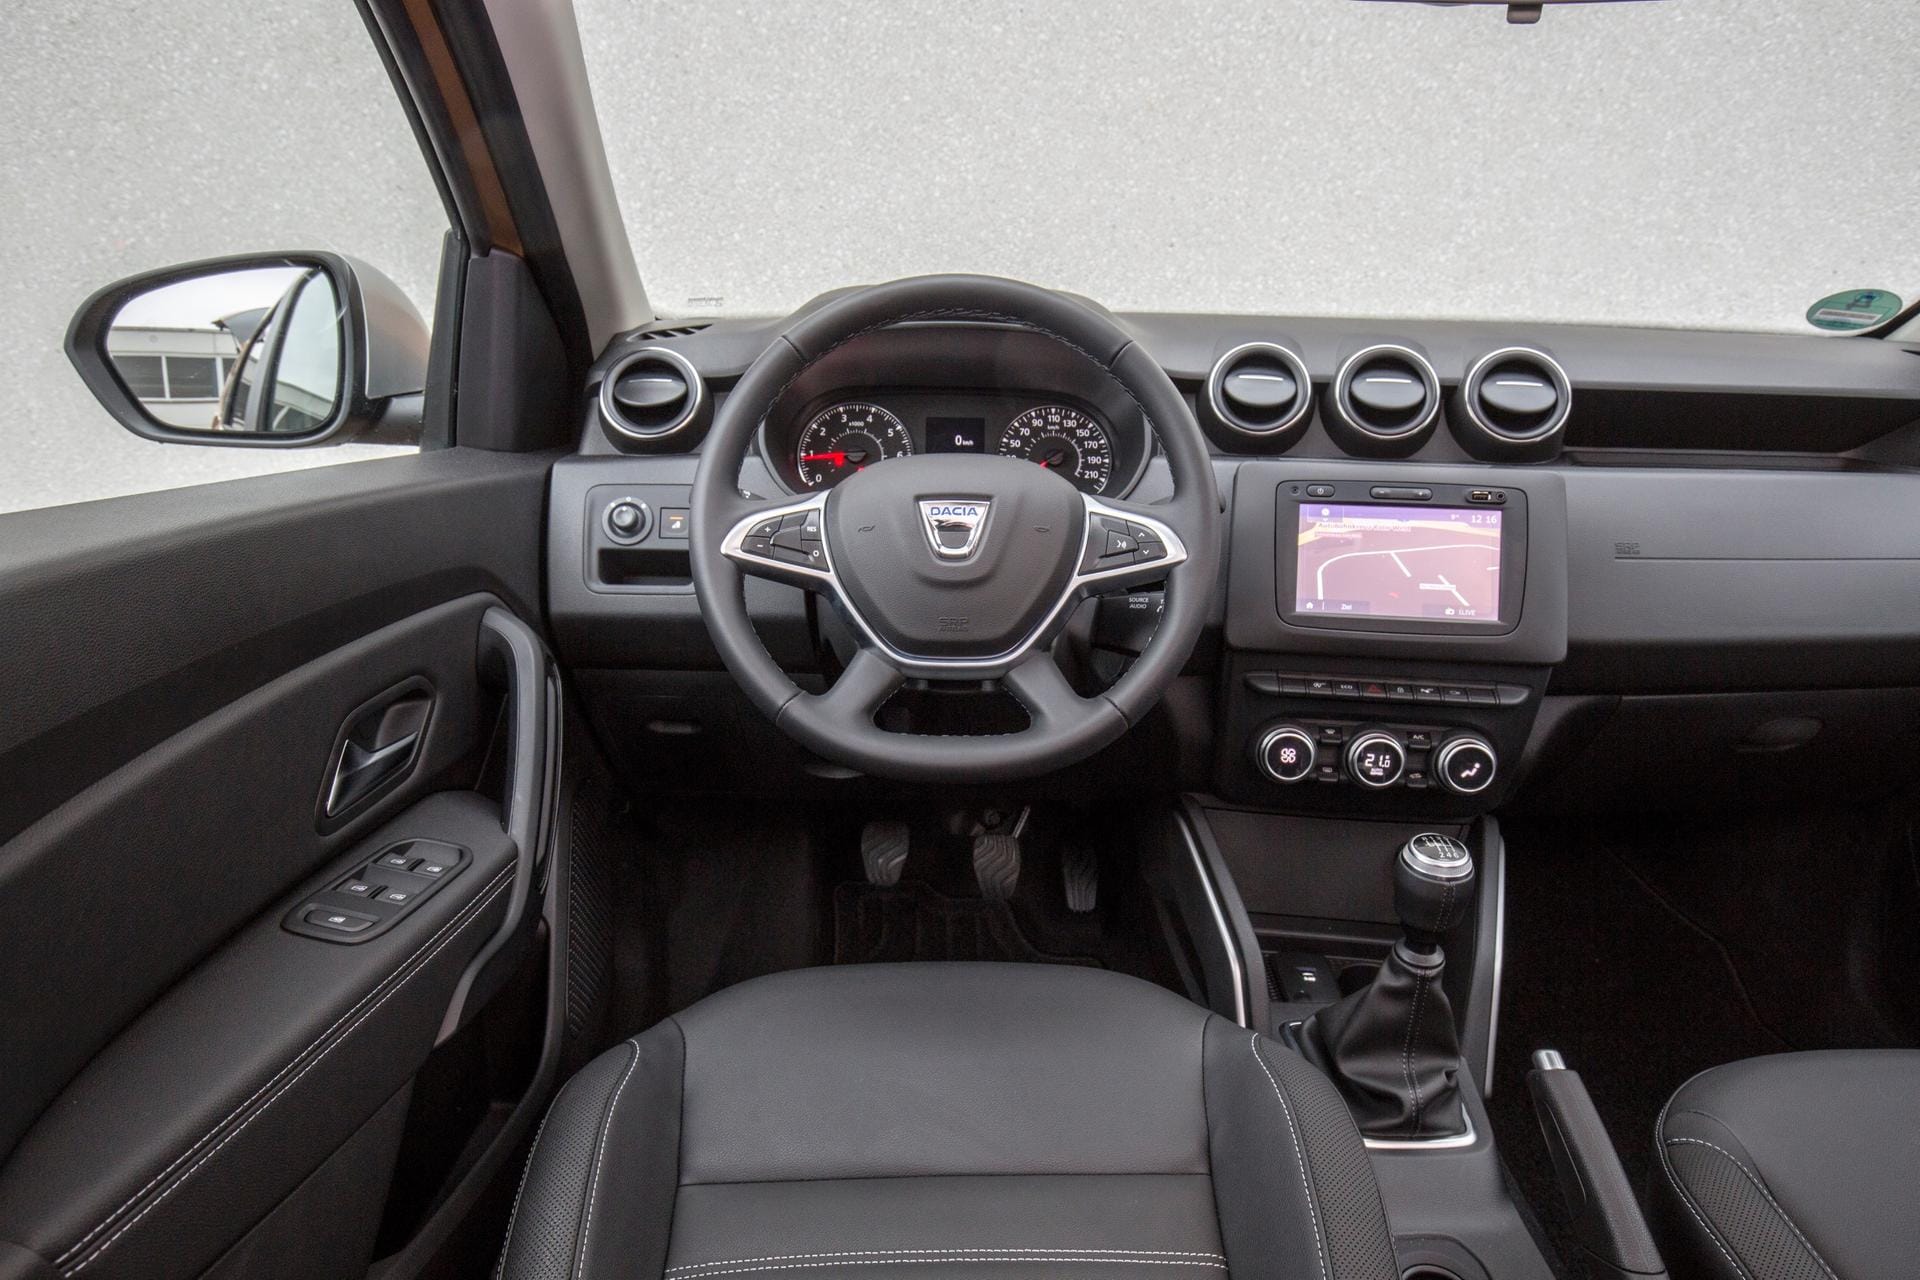 Da in dieser Preisklasse nun mal kein feines Cockpit in Lack und Leder zu erwarten ist, muss sich der Dacia-Fahrer mit einer schwarzen Plastiklandschaft abfinden.